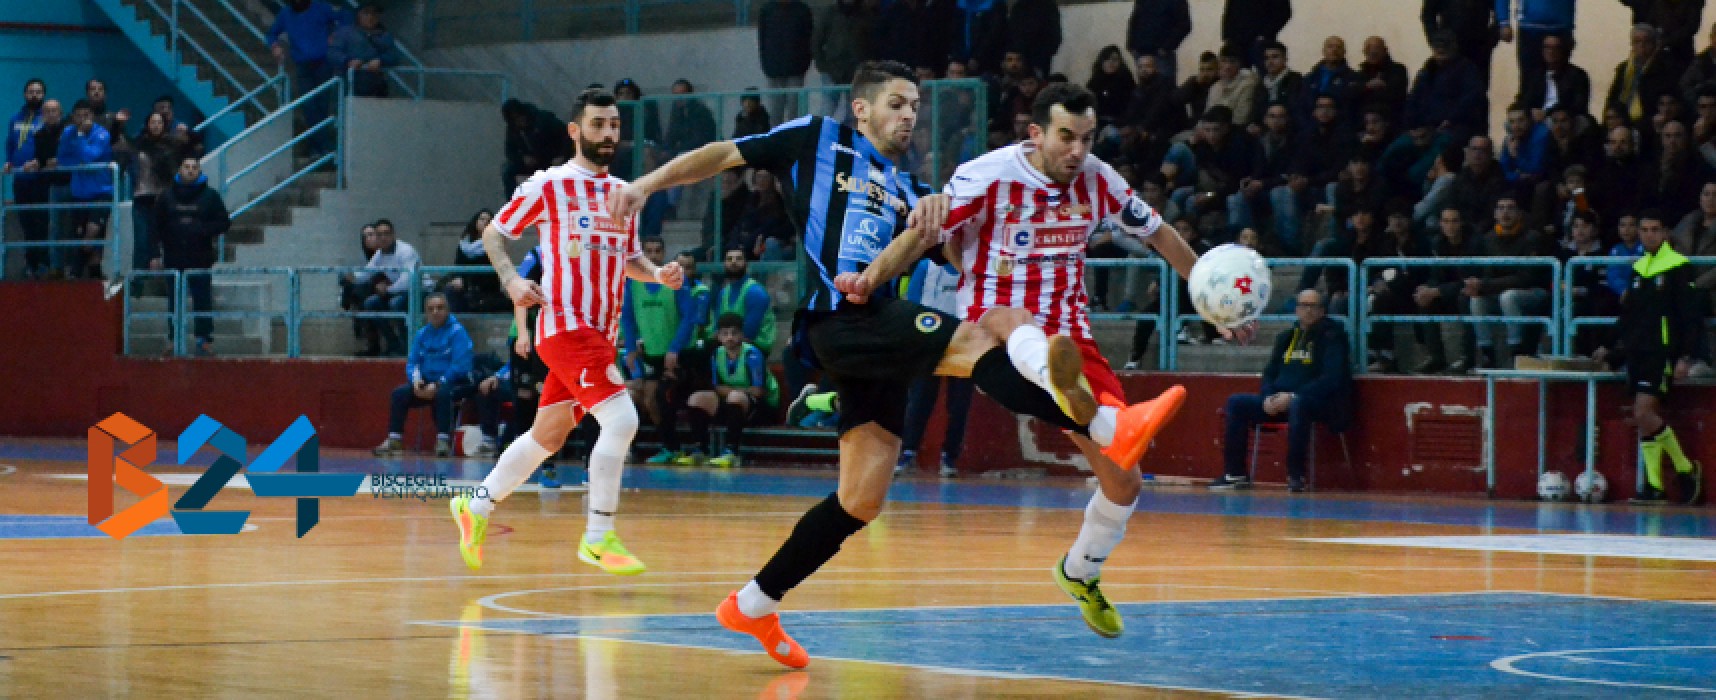 Futsal Bisceglie: ancora segno x, fermato in casa dal Cristian Barletta